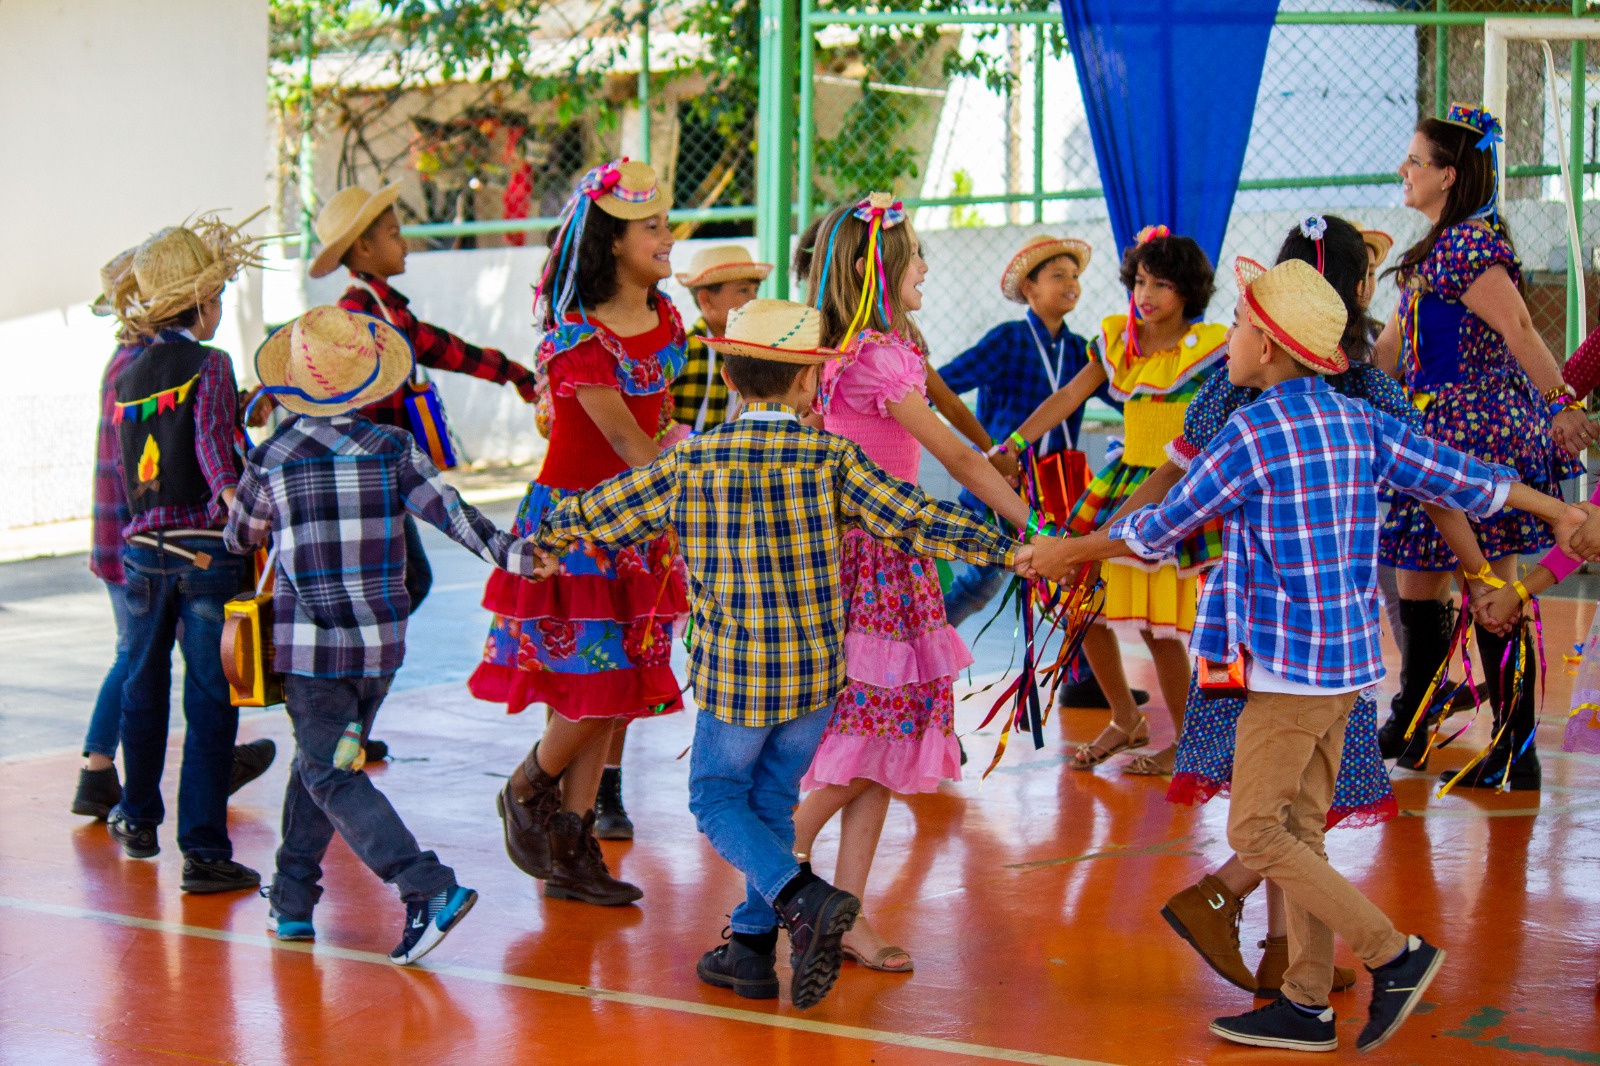 Festas juninas das escolas públicas prometem danças, comidas típicas e brincadeiras